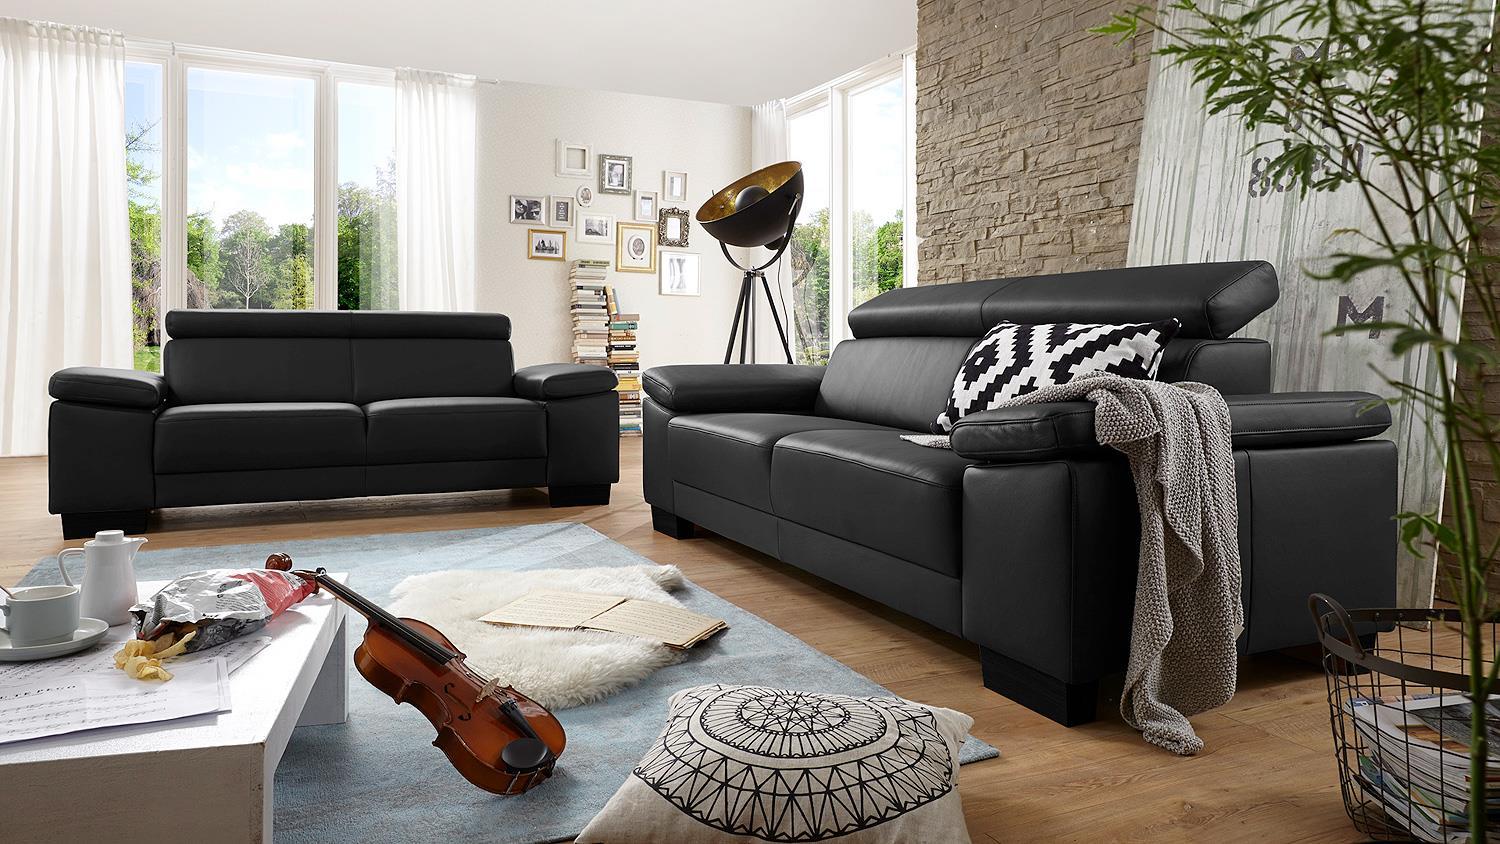 Sofa SANTIAGO Garnitur in Leder schwarz mit Funktion Bild 1